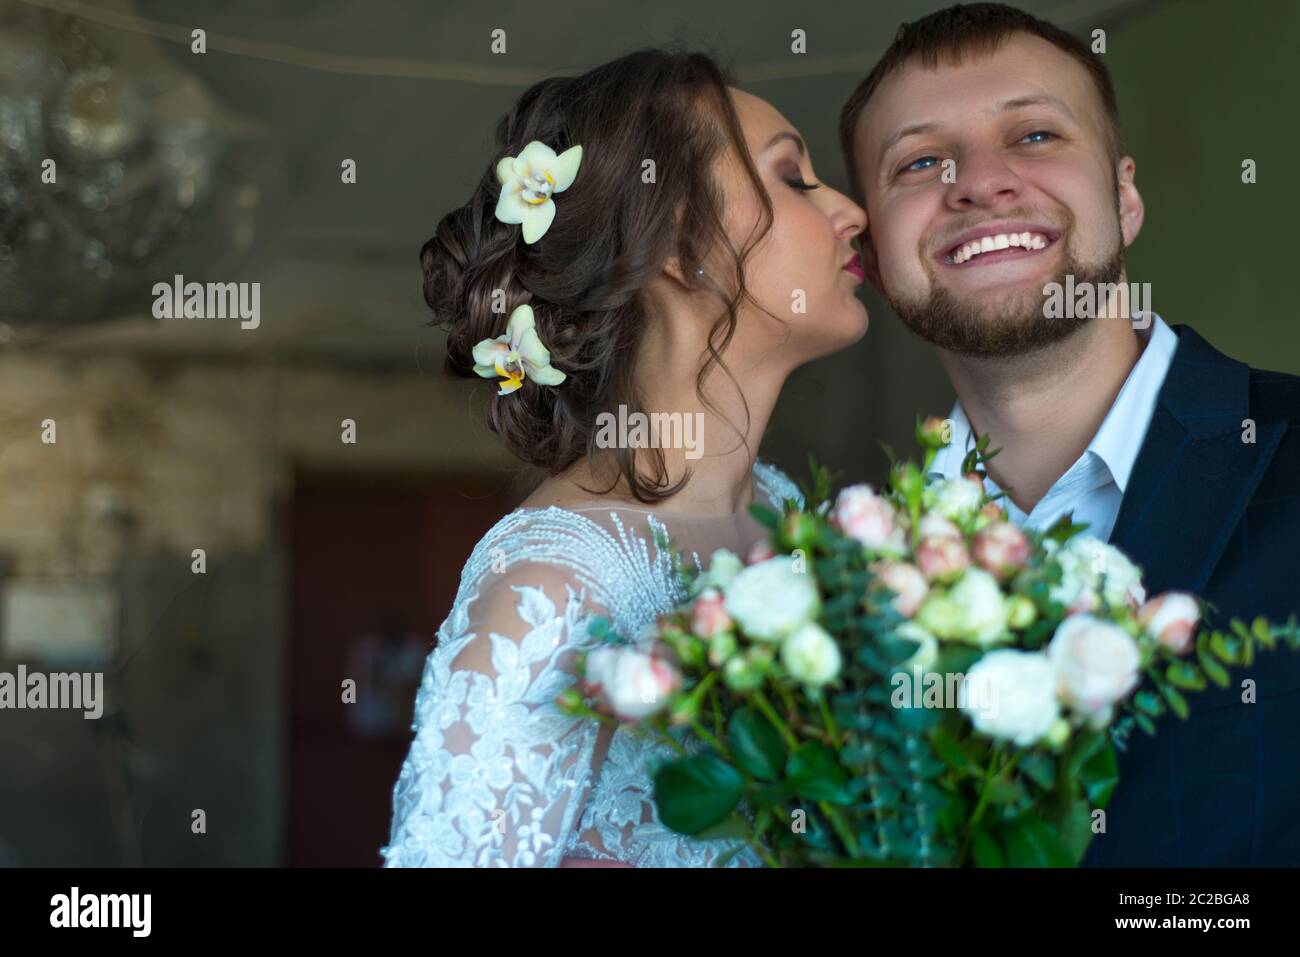 Portrait de la mariée et du marié heureux. La mariée embrasse le marié. Jeunes souriants de vingt-cinq ans, cérémonie de mariage, couple de mariés Banque D'Images